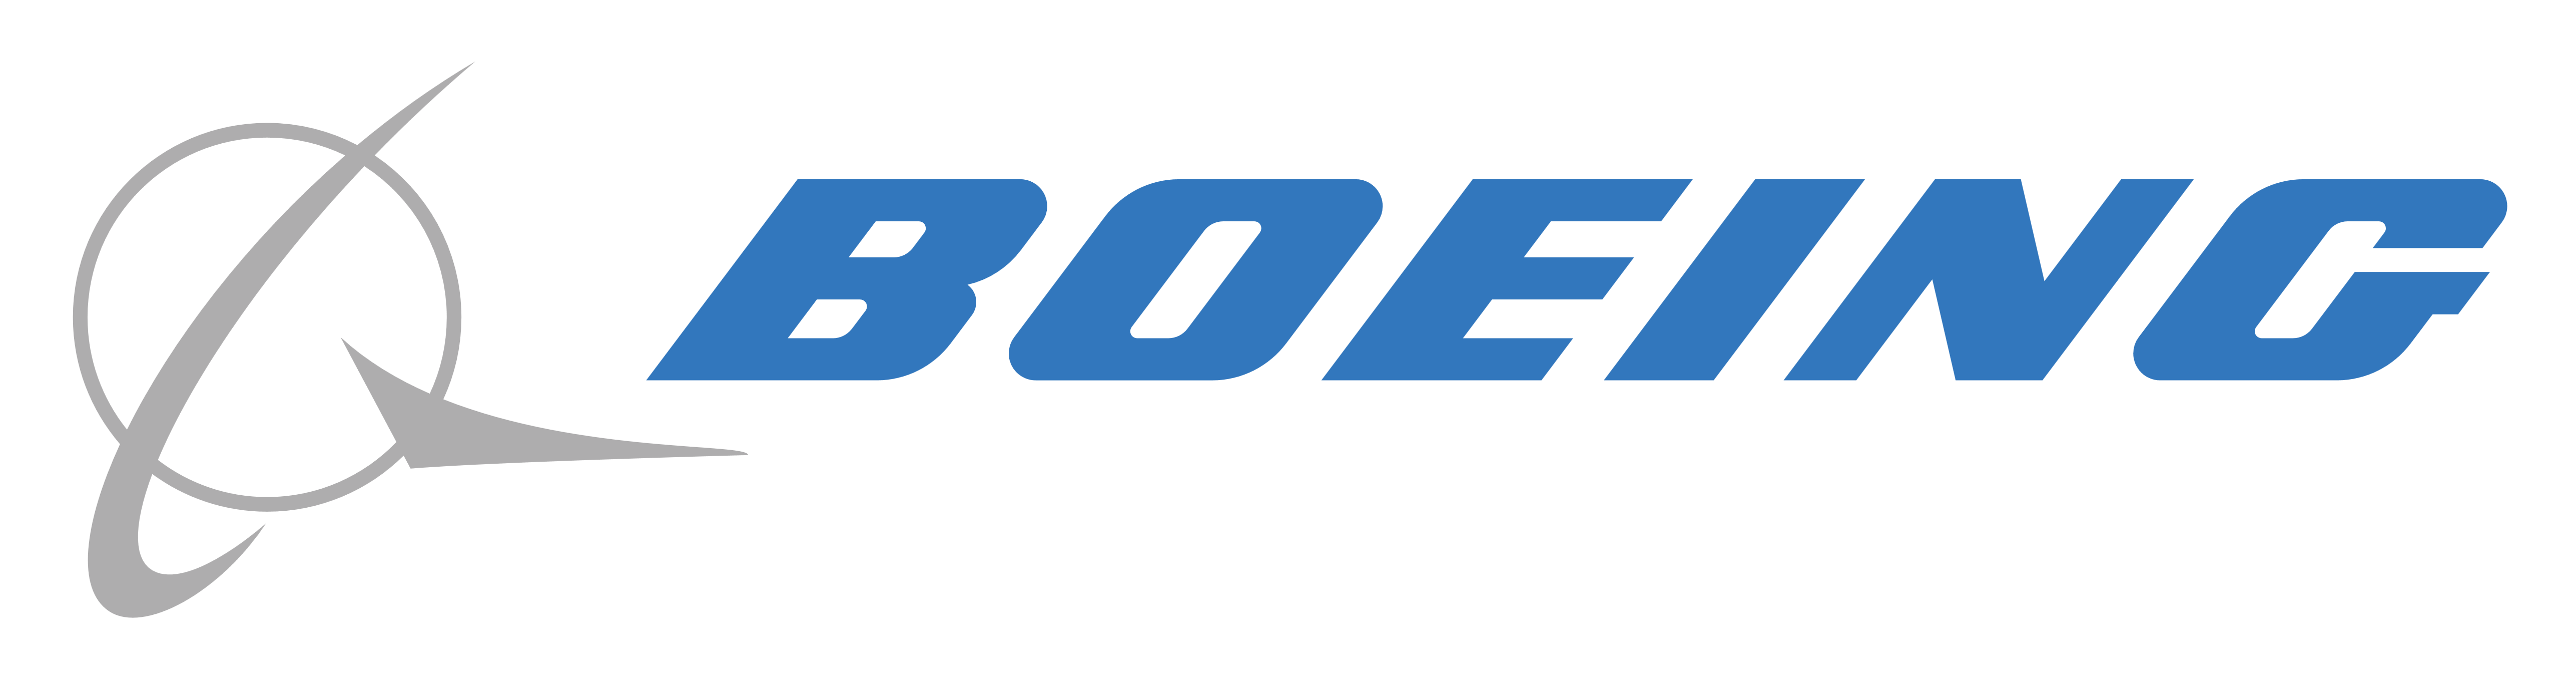 Boeing Logo Company Nyse:ba, 